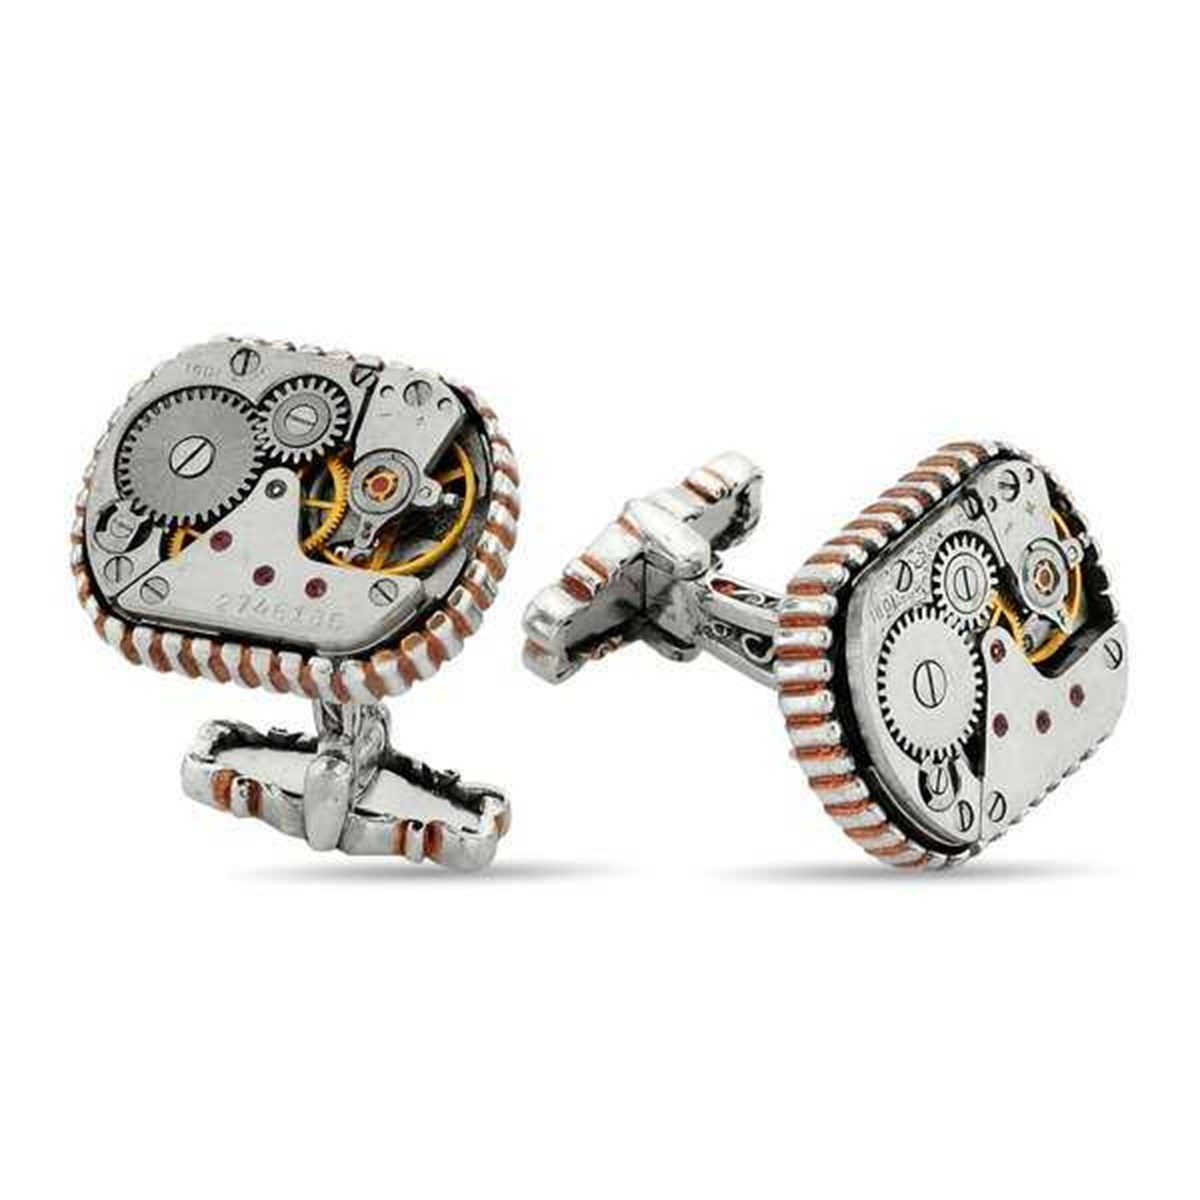 Silver Special Design Clock Mechanism Cufflink